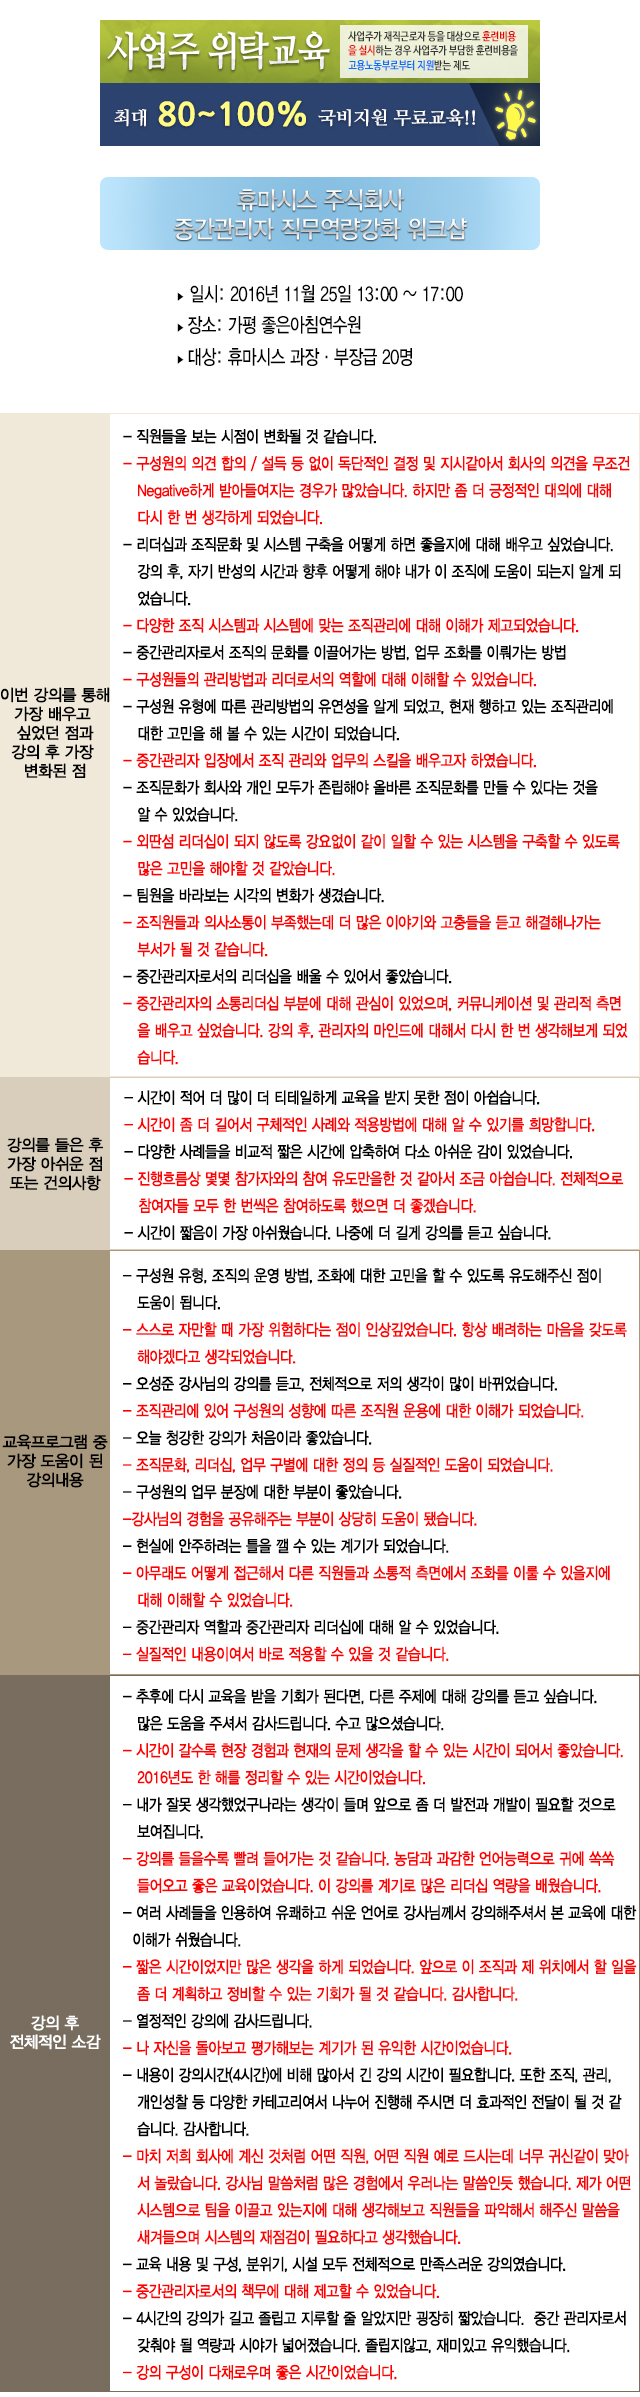 한국중앙인재개발원 후기 휴마시스.jpg